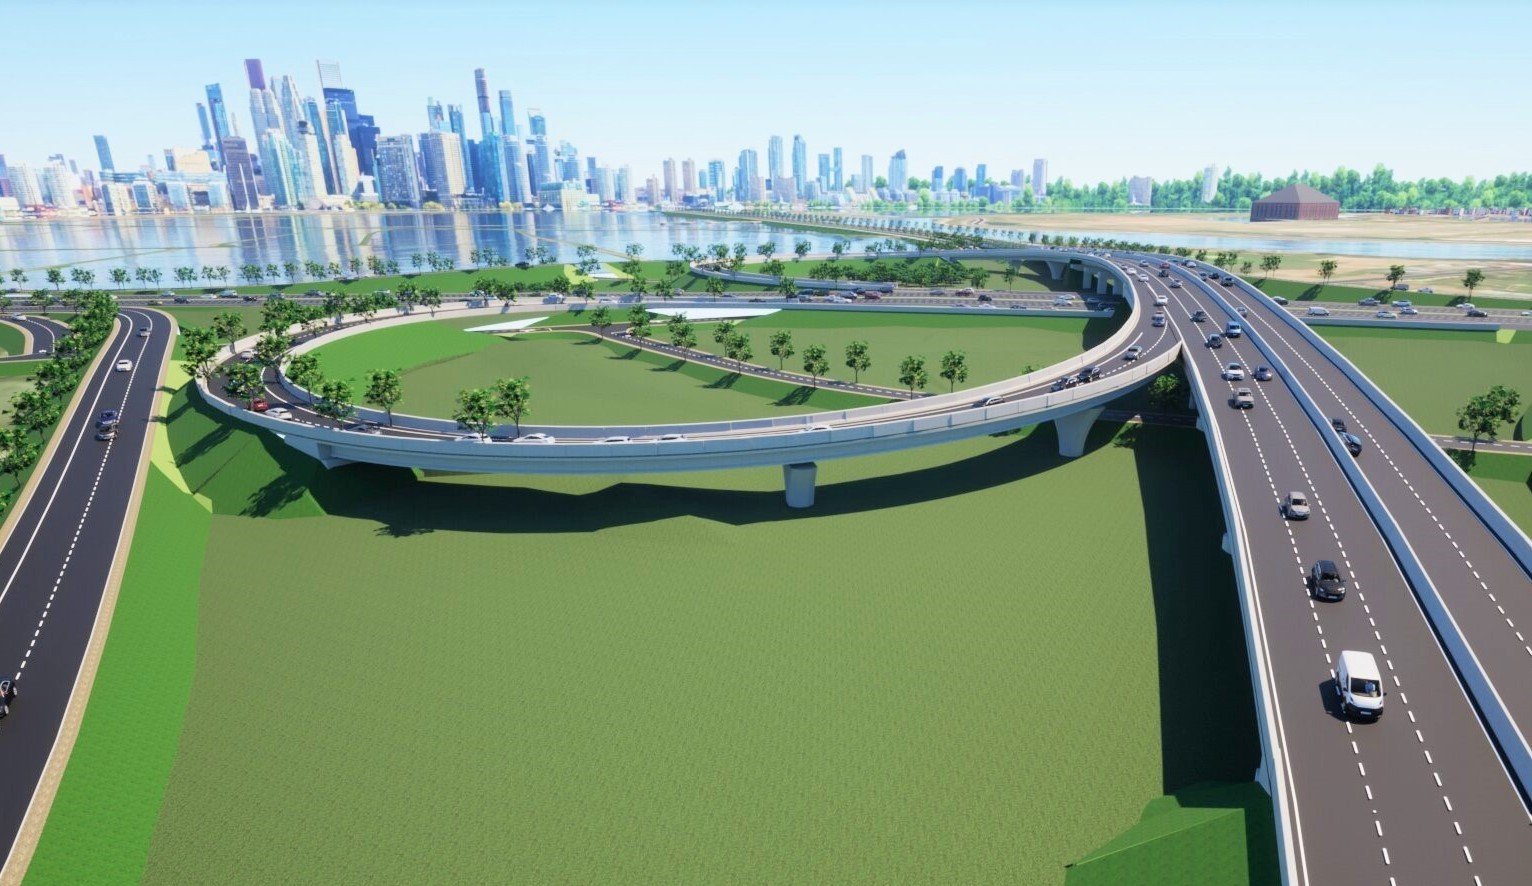 Chân dung &quot;đại gia&quot; Ninh Bình vừa trúng gói thầu 600 tỷ đồng xây cầu Yên Sở - Ảnh 1.